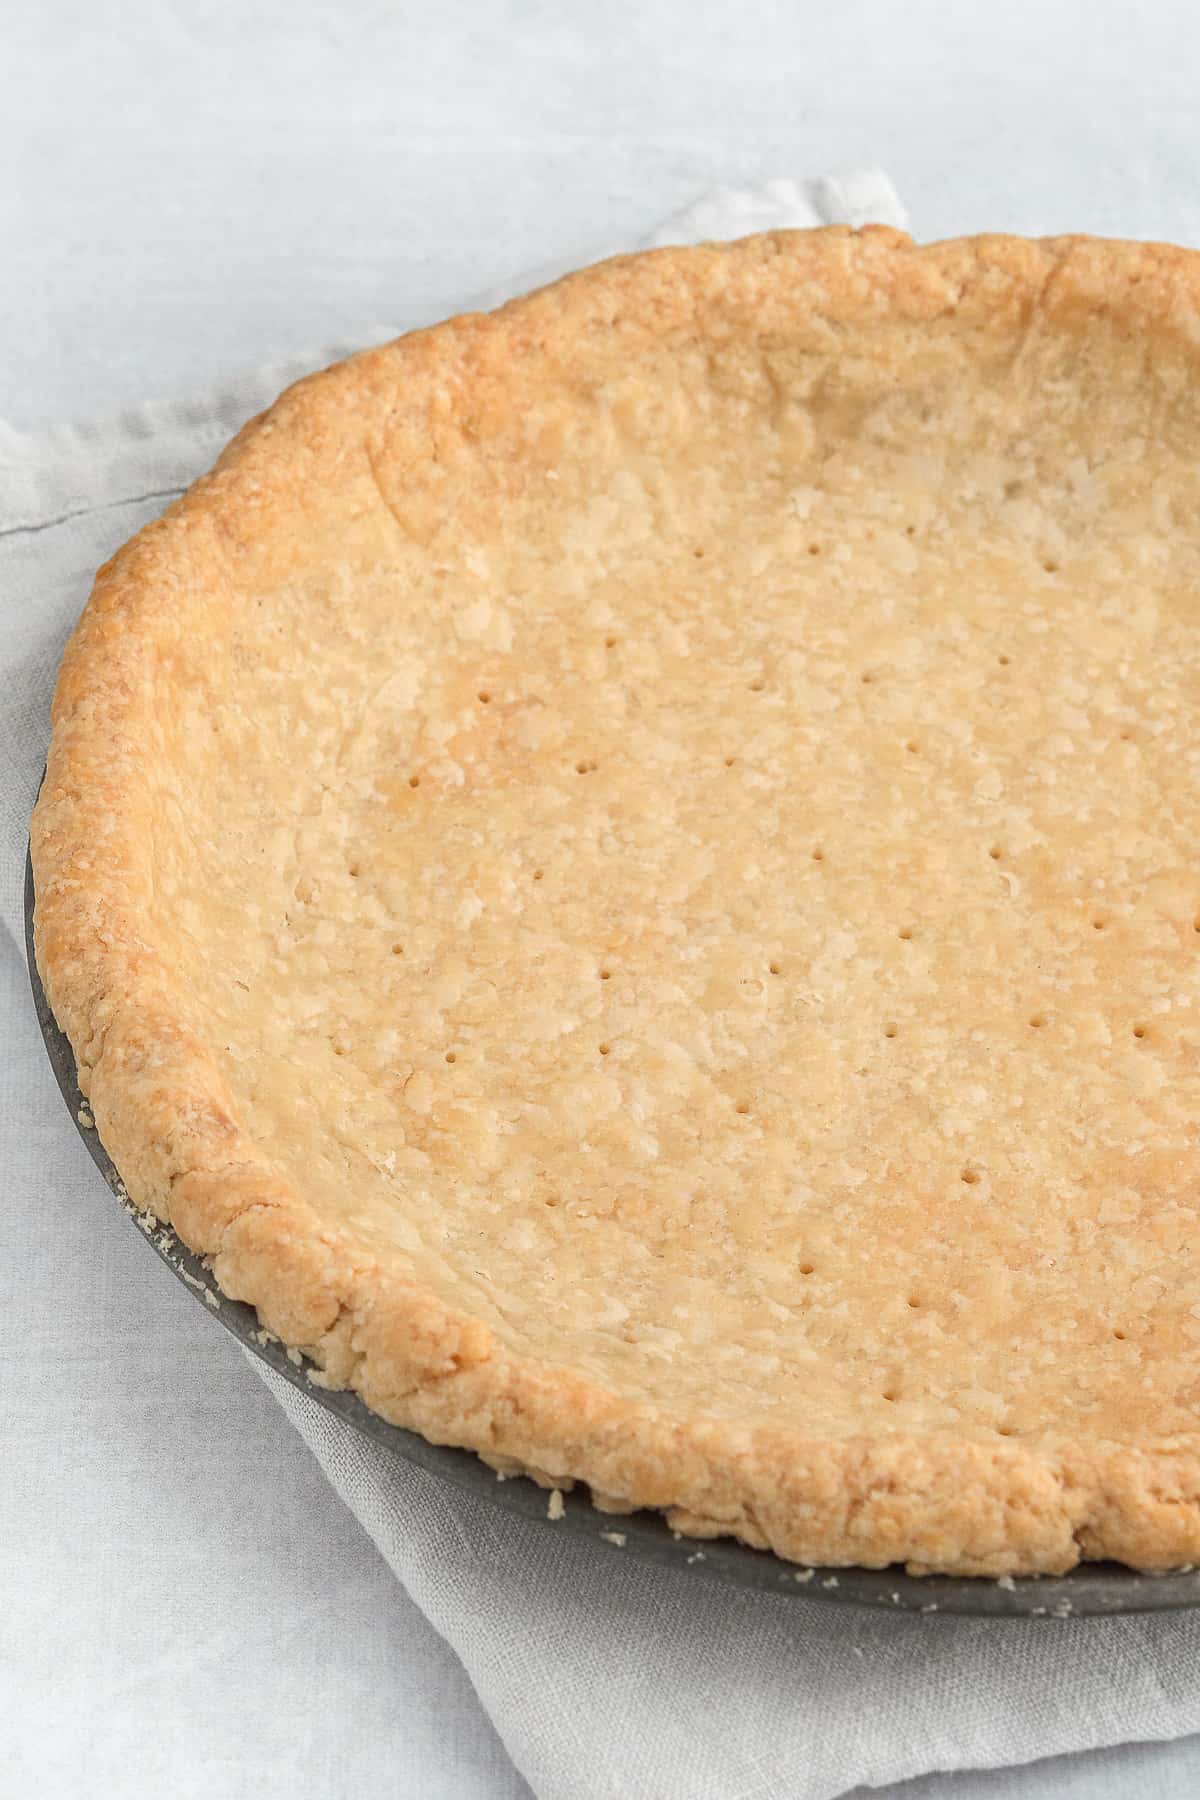 Baked pie crust in pan